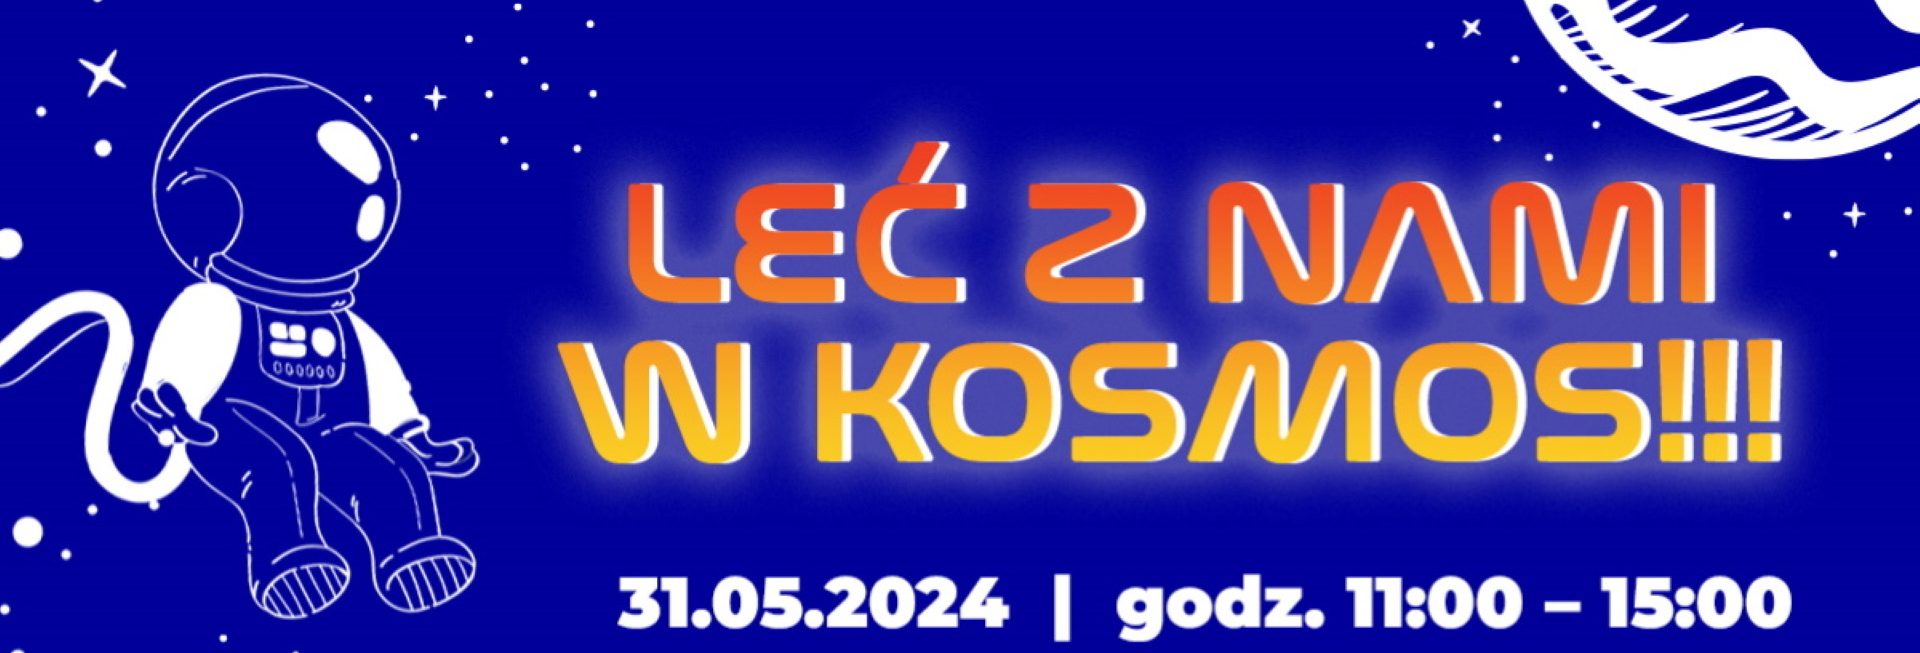 Plakat zapraszający w piątek 31 maja 2024 r. do Olsztyna na pokaz Leć z Nami w Kosmos!!! Olsztyńskie Planetarium Olsztyn 2024.